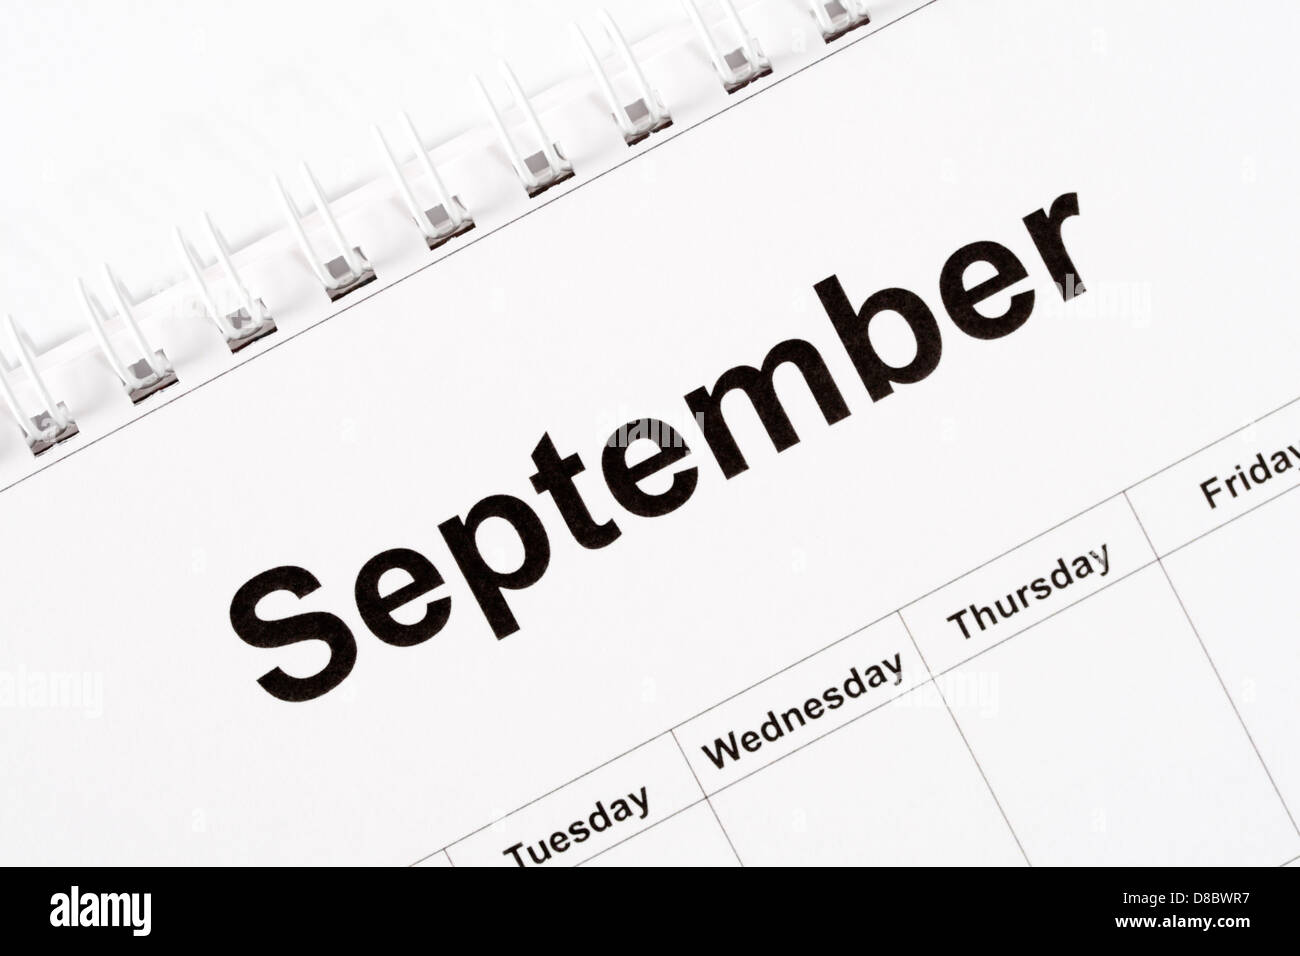 Calendar month of September Stock Photo